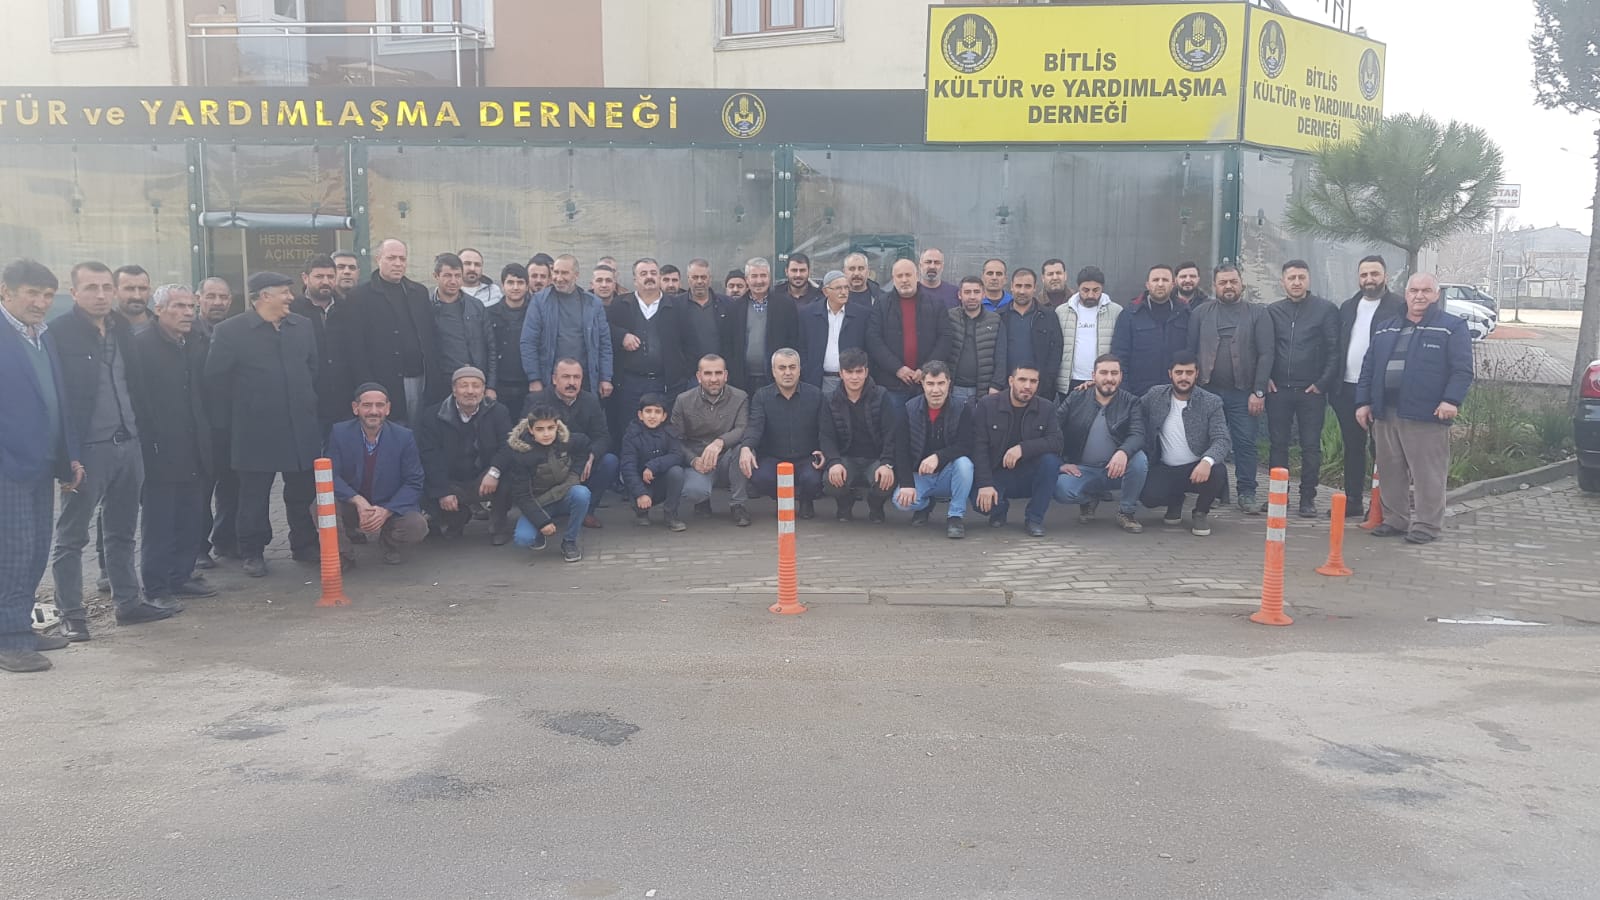 Bitlisliler Derneğinde yeni başkan Metin İbiş oldu !